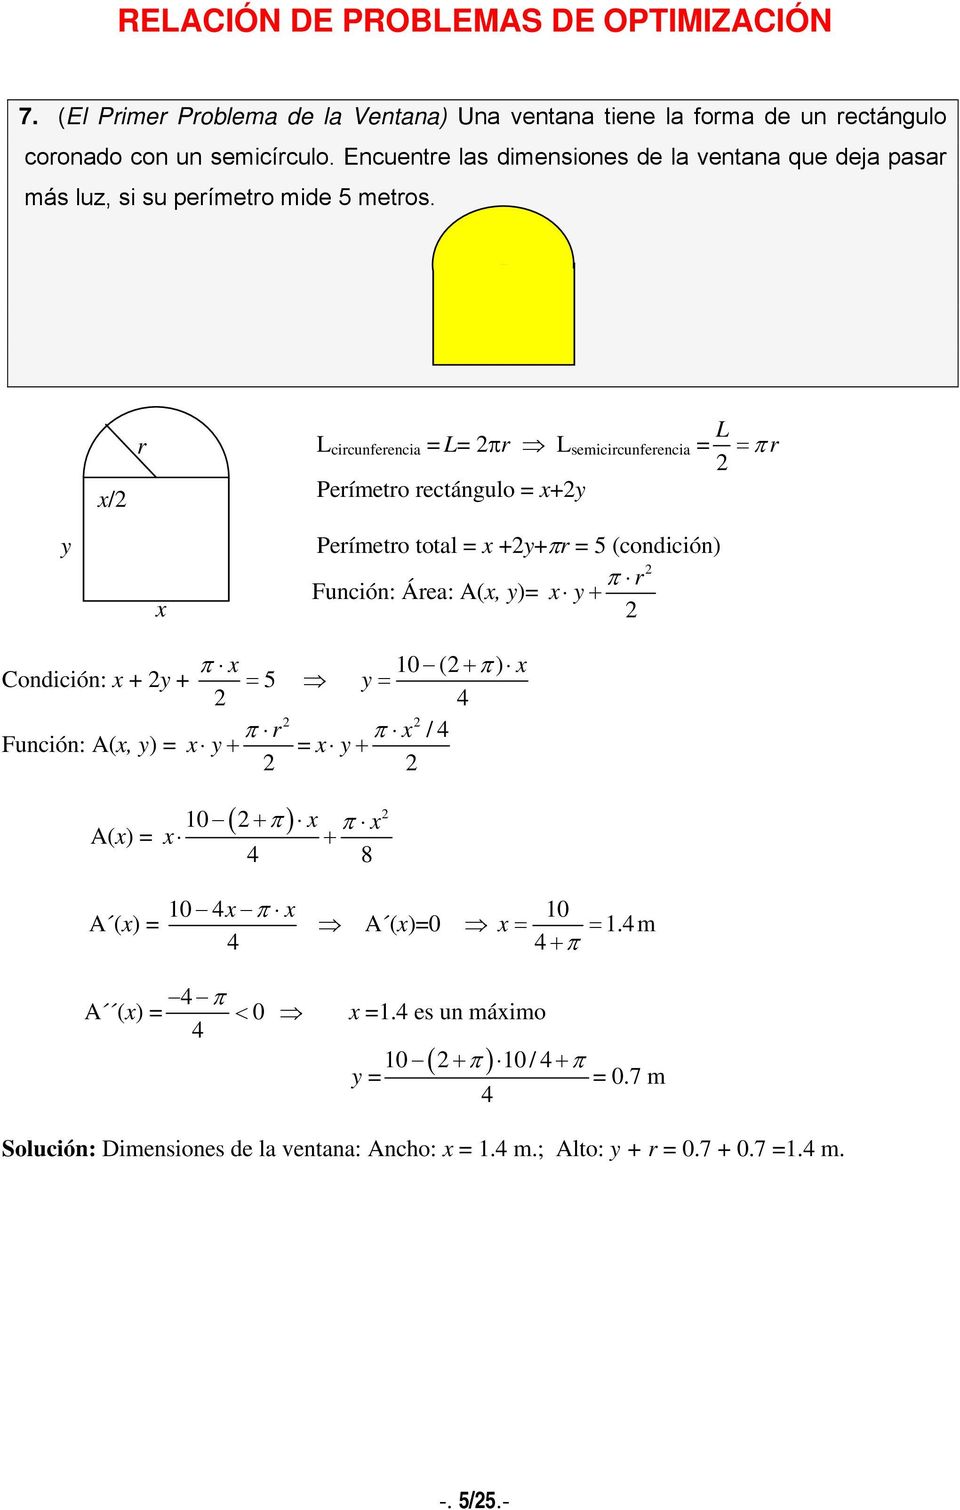 r L circunferencia L πr L semicircunferencia L π r / Perímetro rectángulo + Perímetro total ++πr 5 (condición) π r Función: Área: A(, ) + π 10 ( +